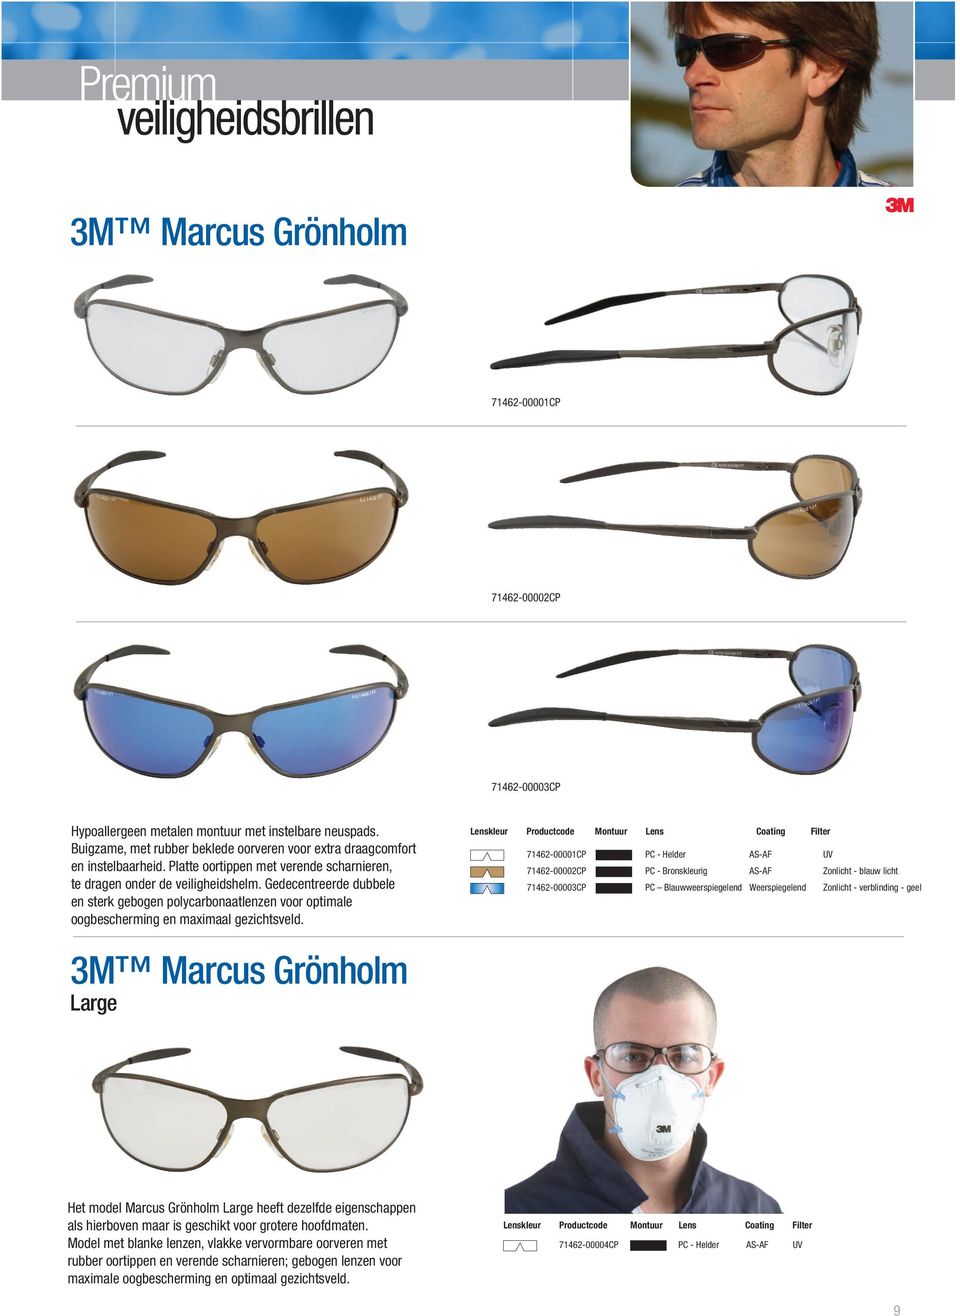 Gedecentreerde dubbele en sterk gebogen polycarbonaatlenzen voor optimale oogbescherming en maimaal gezichtsveld.